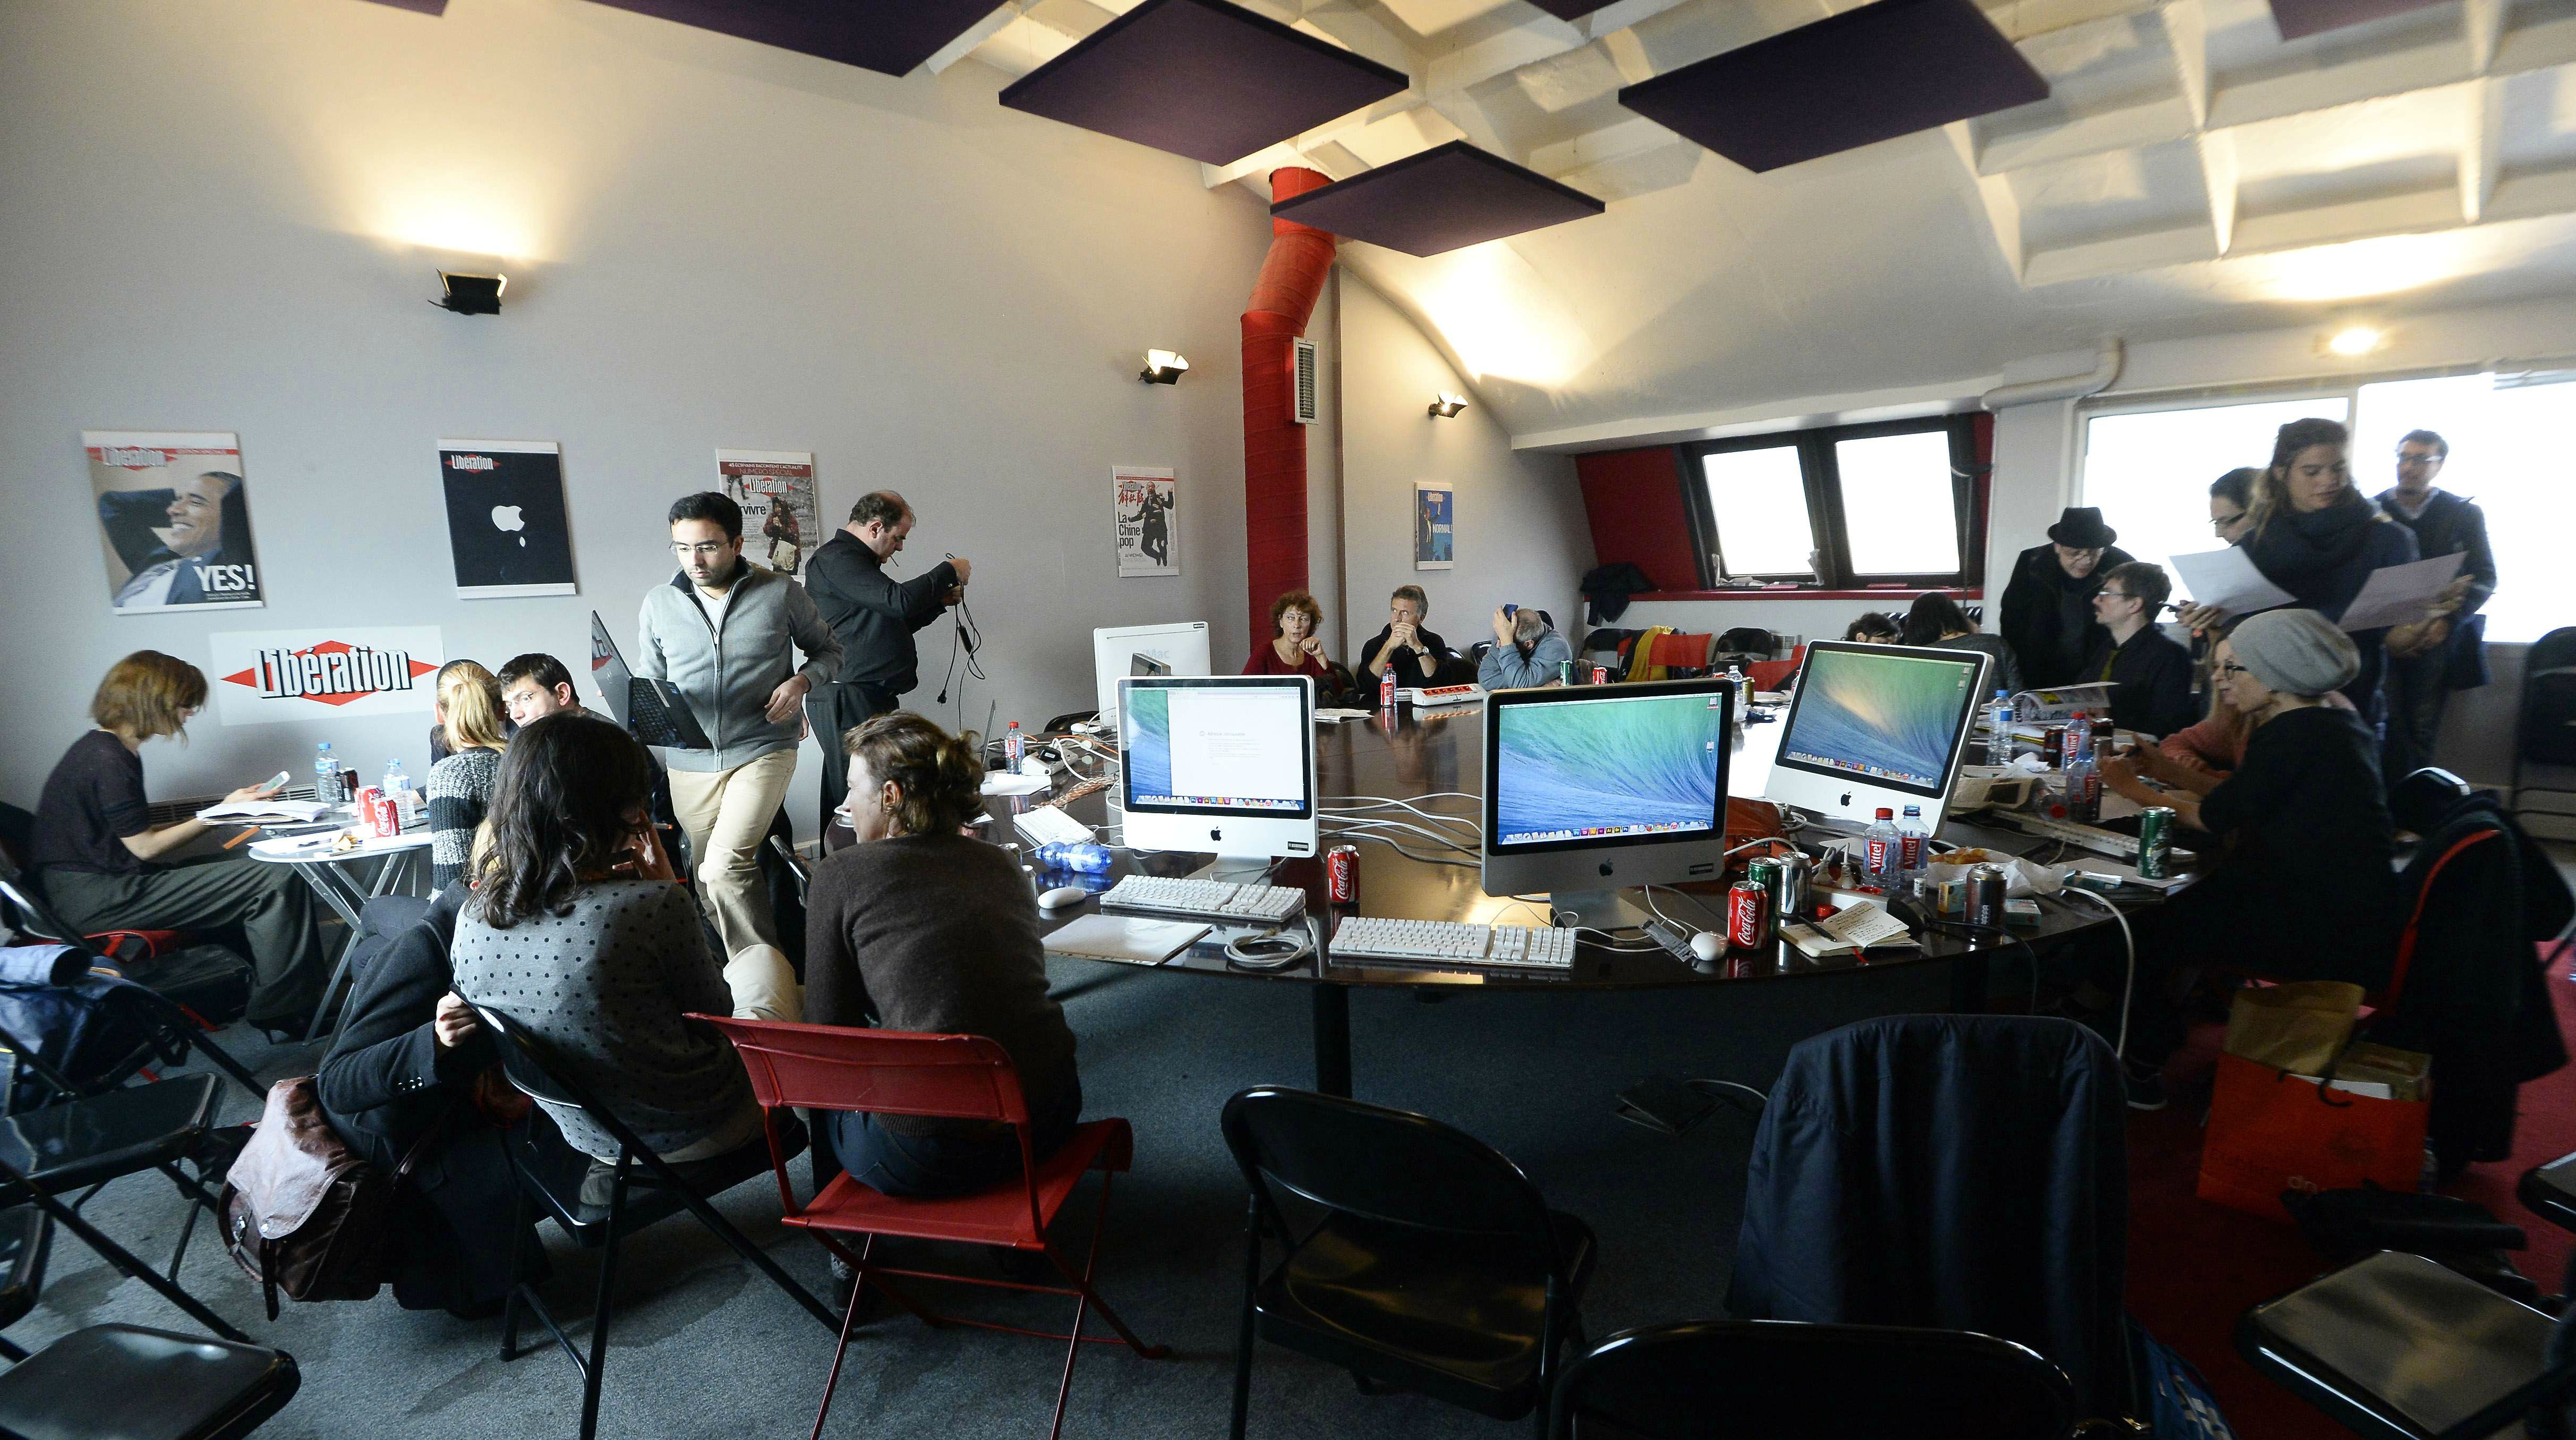 La rédaction de Charlie Hebdo en plein travail le 10 janvier 2015 dans les locaux de Libération.